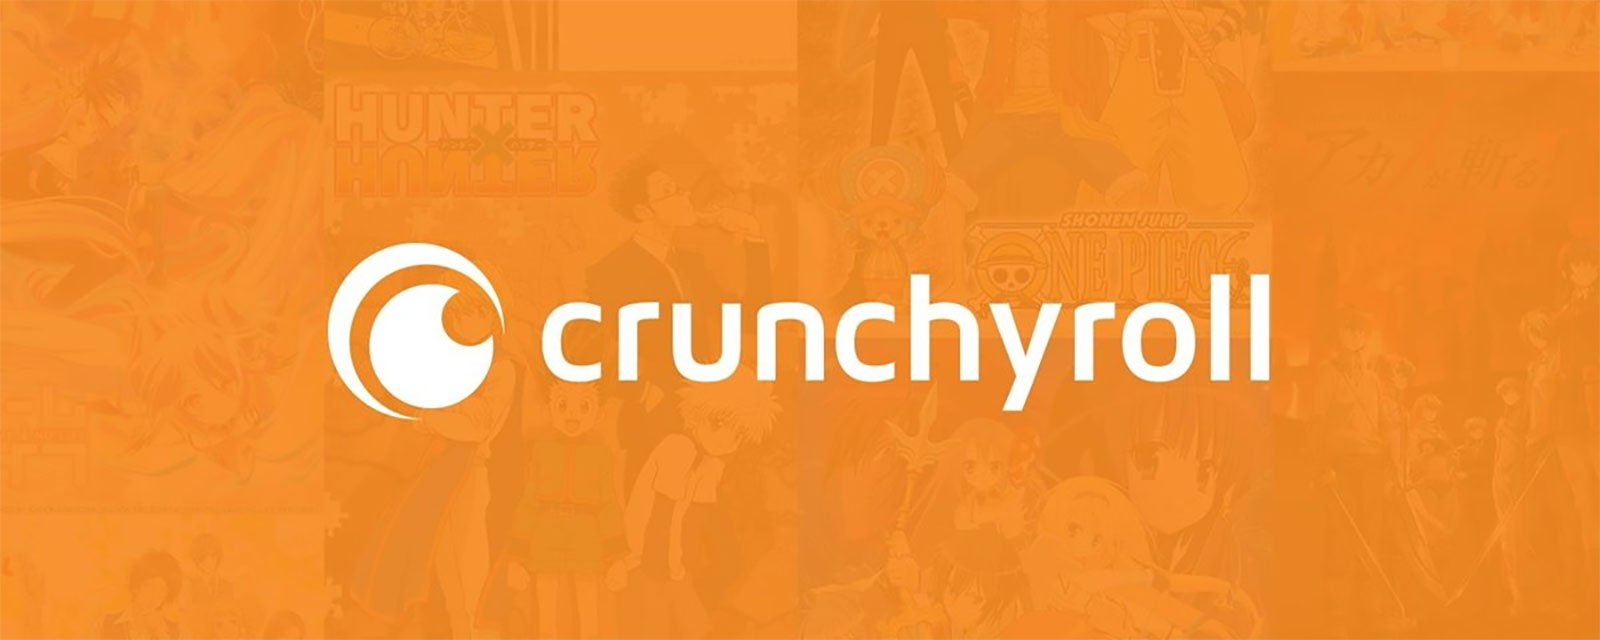 crunchyroll premium apk